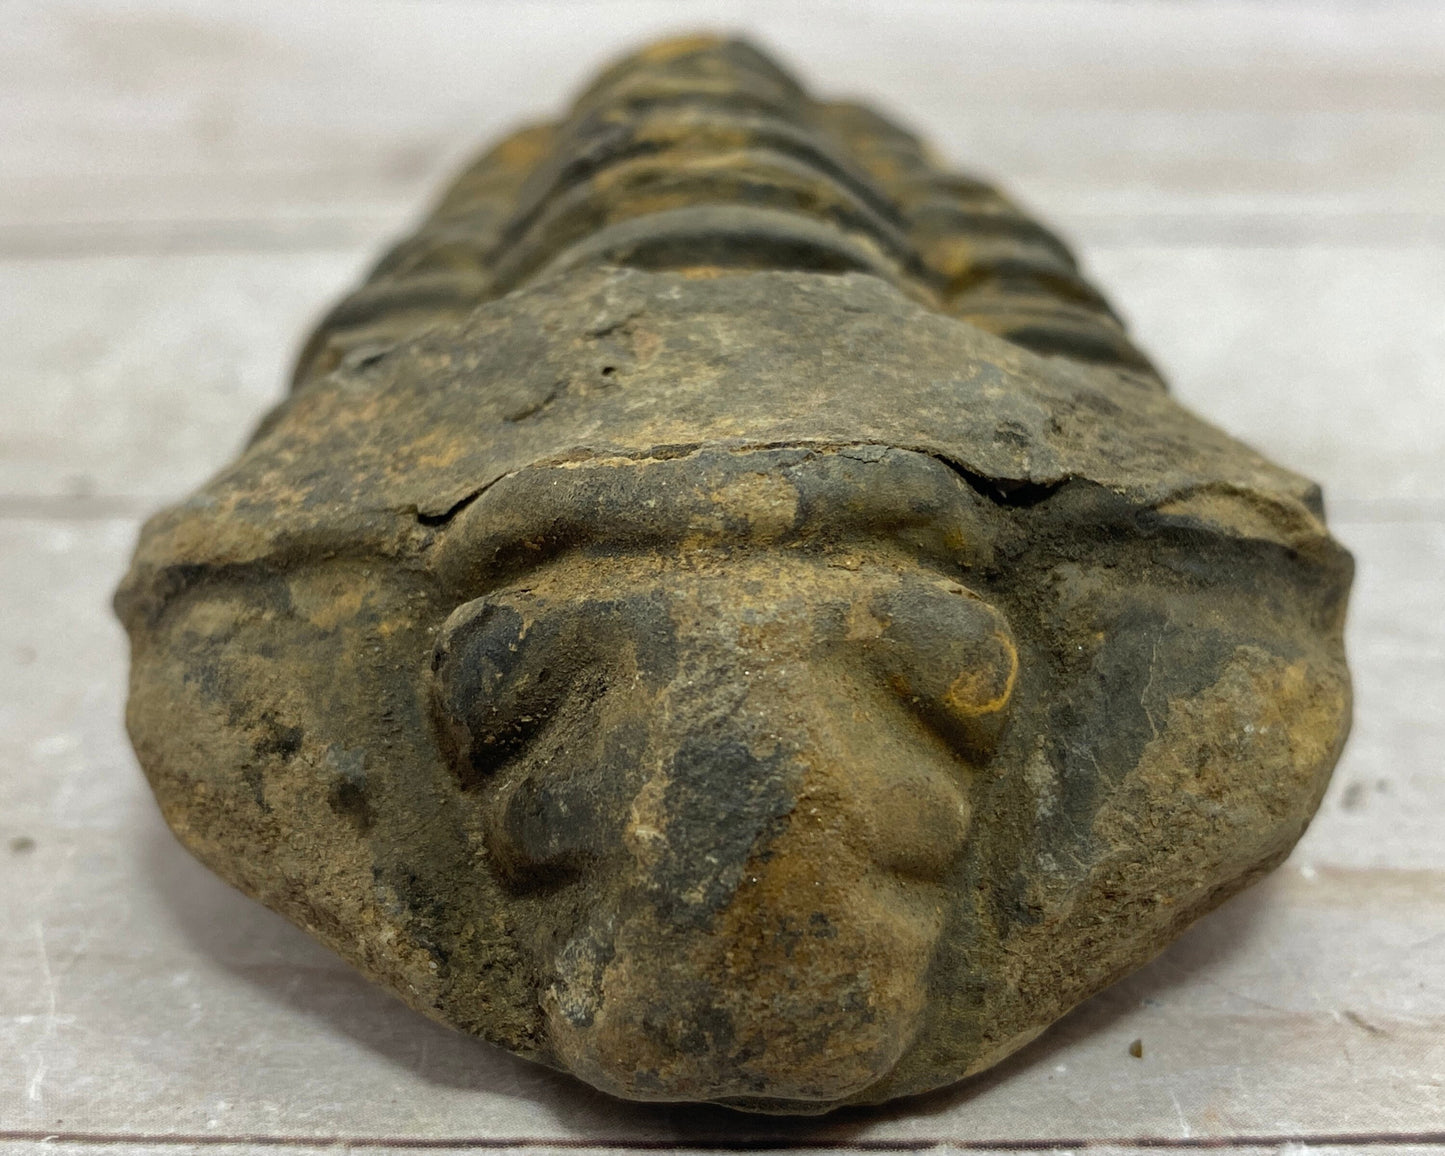 Trilobite fossil, Calymen trilobite